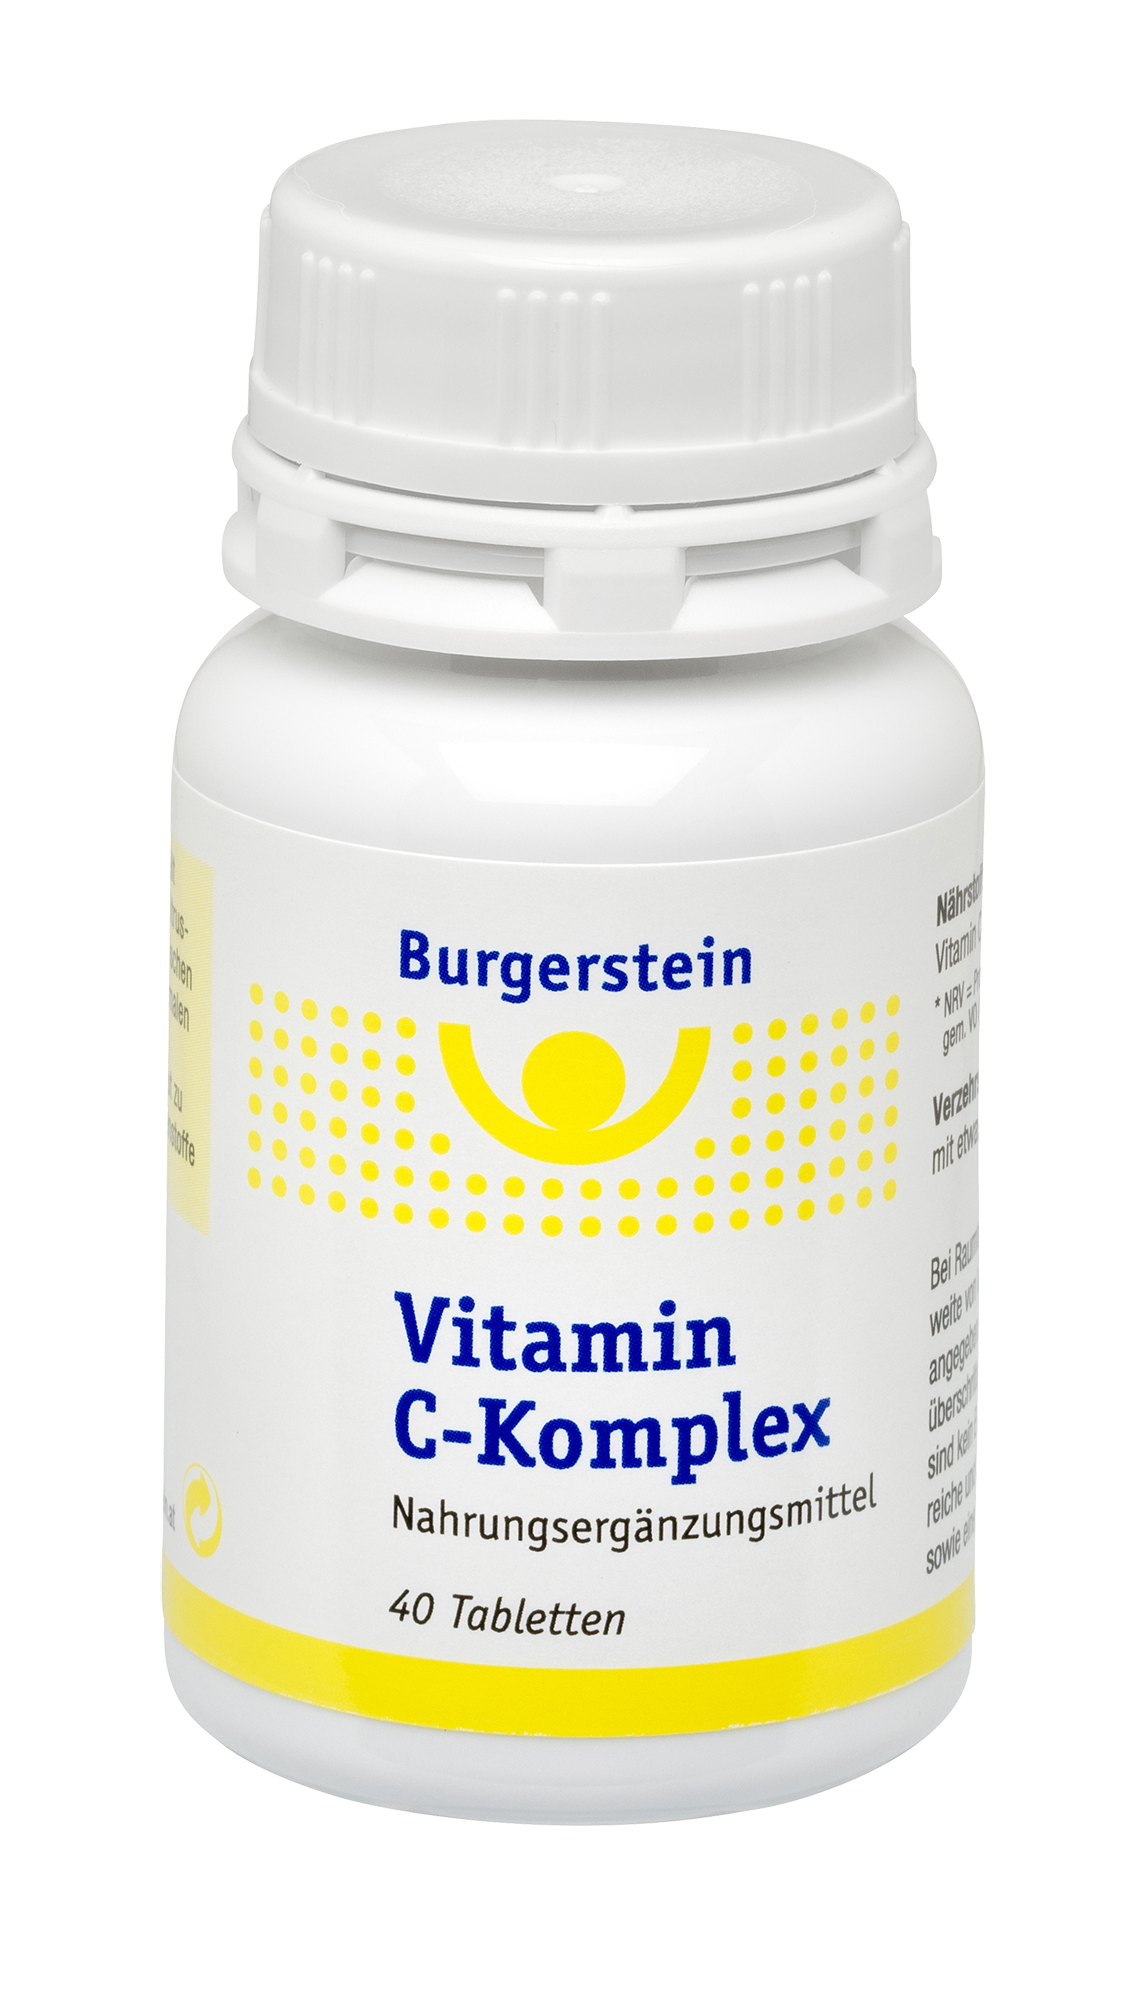 Burgerstein Vitamin-C Komplex 40 Tabletten